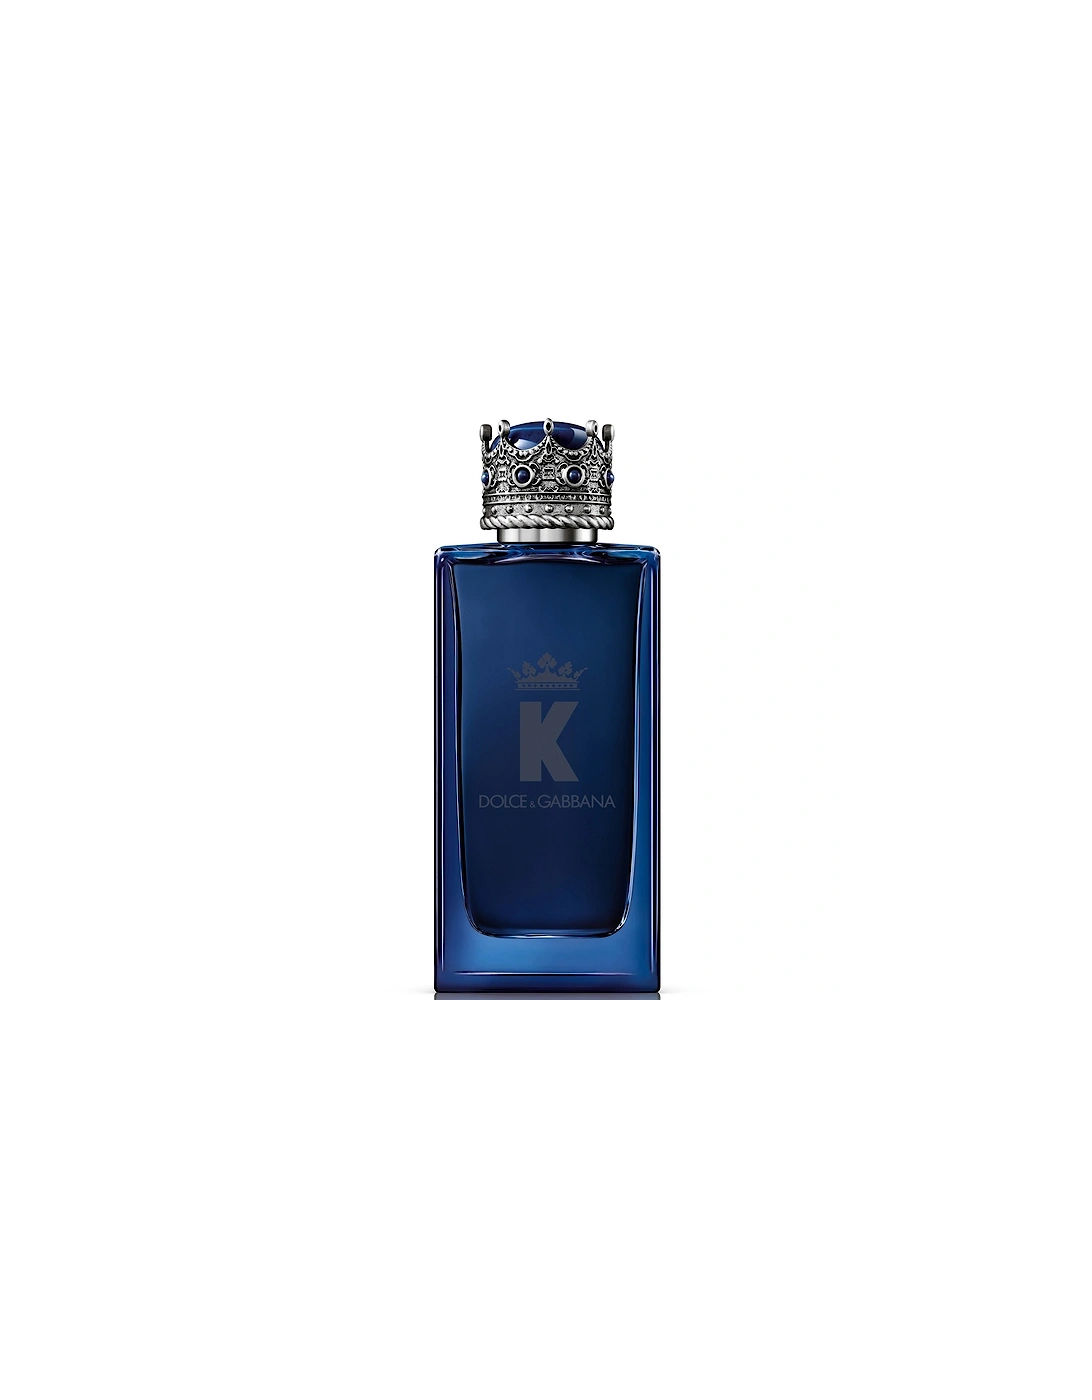 Dolce&Gabbana K Intense Eau de Parfum 100ml, 2 of 1